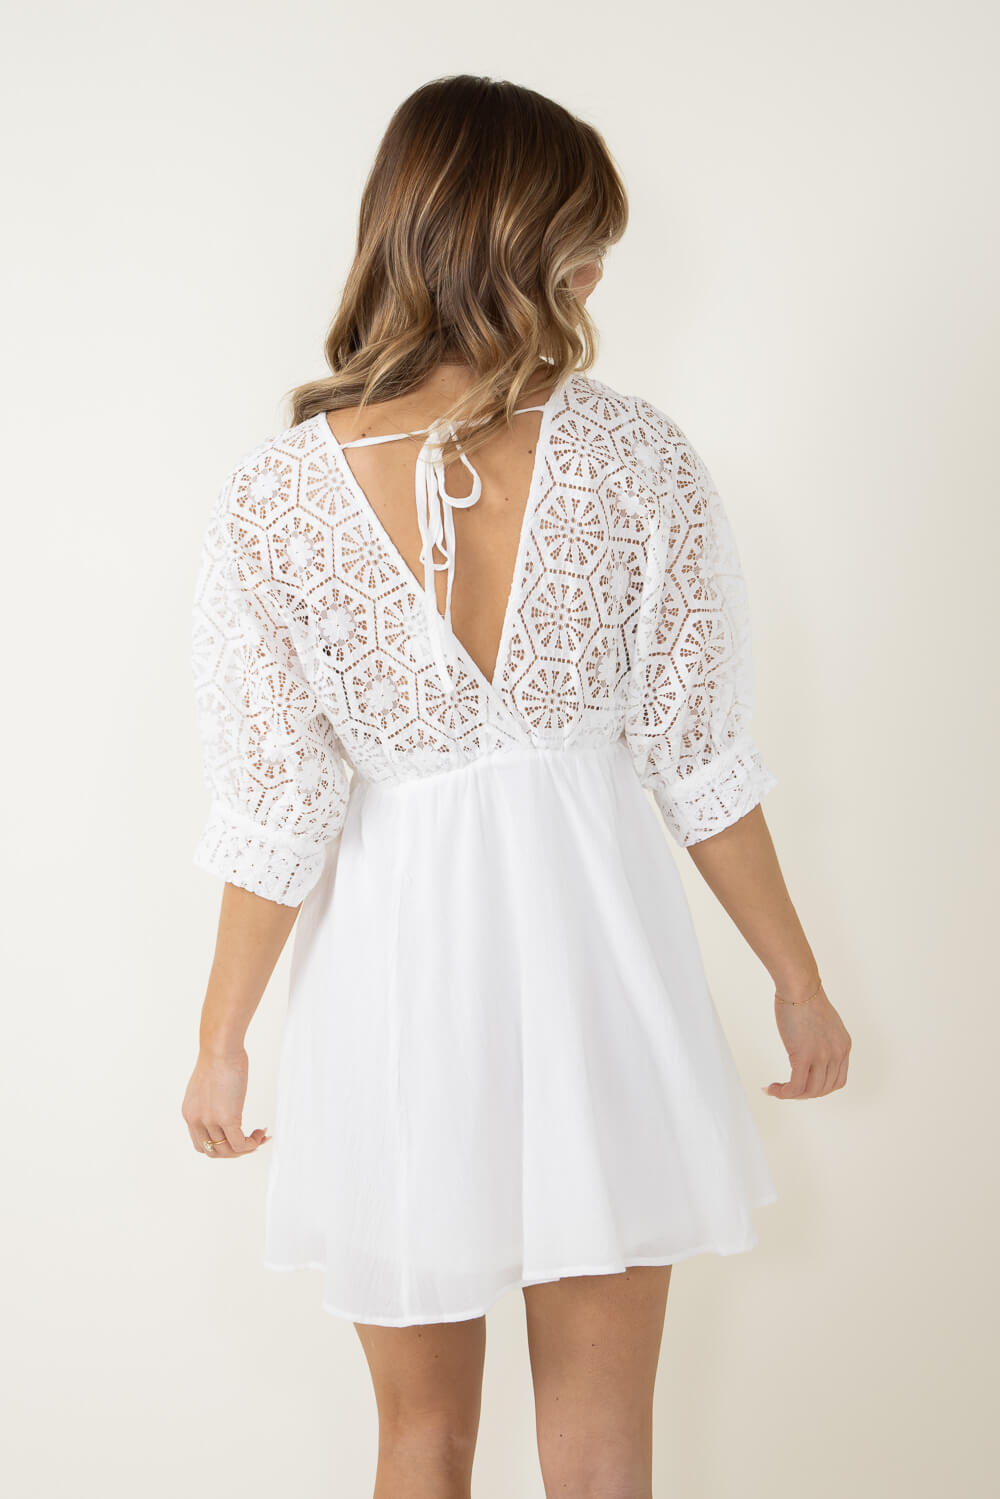 Crochet Top Mini Dress for Women in White | LD44148-WHITE – Glik's